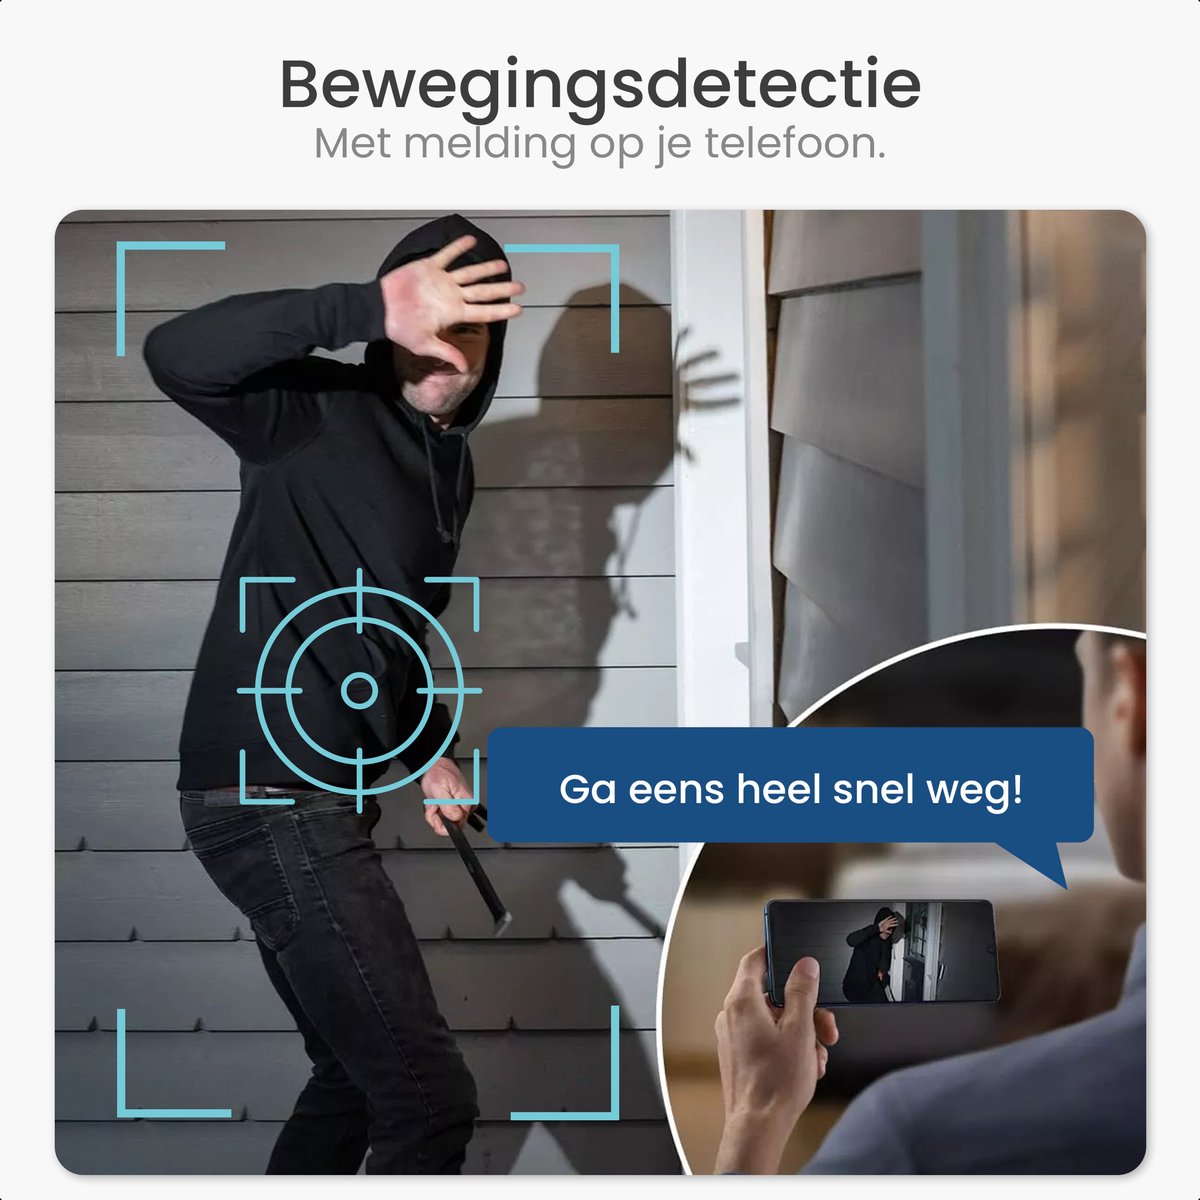 Gologi draadloze deurbel - HD Video Deurbel - Met Camera en WiFi - Inclusief Gong - Nederlandstalige app - Waterdicht - Zwart